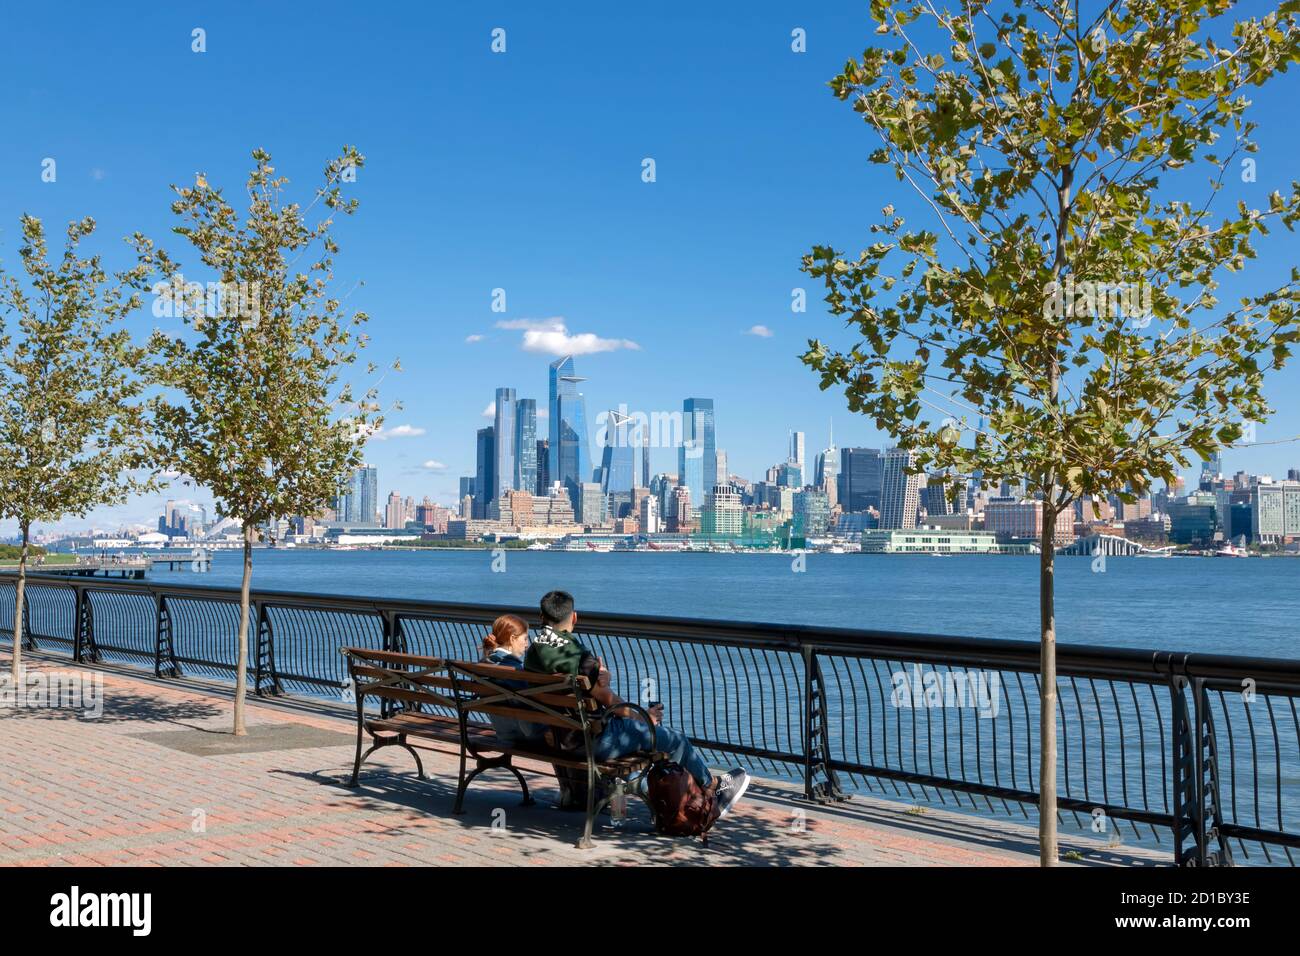 Pärchen sitzen auf der Bank und genießen den Blick auf die Skyline von New York City/Manhattan von der anderen Seite des Hudson River in Hoboken, New Jersey's Waterfront. Stockfoto